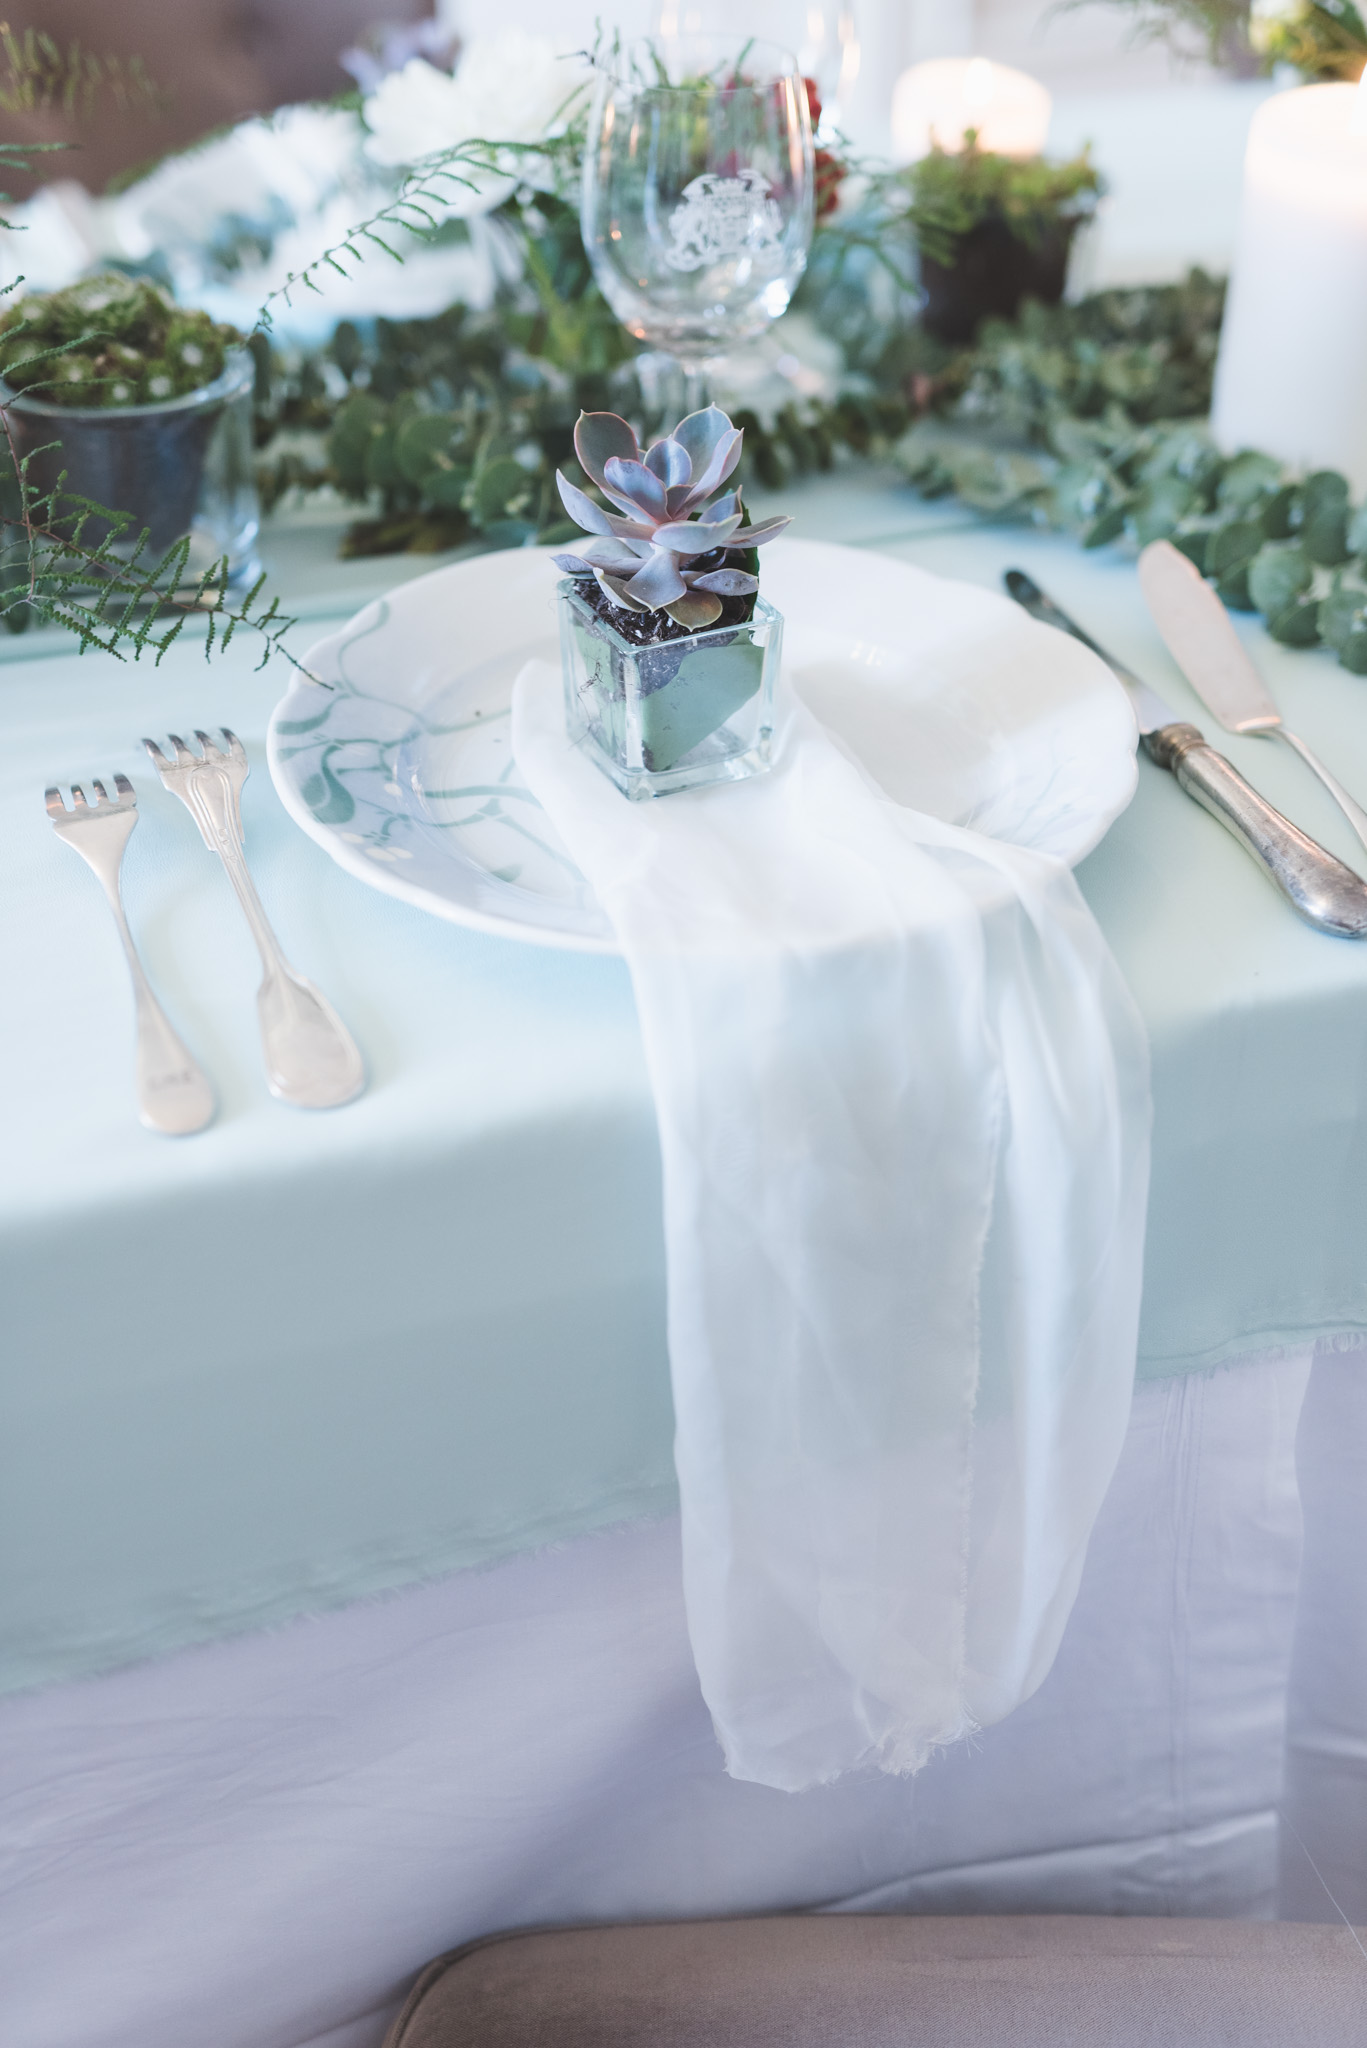 Soliflore et vase de mariage pour centre de table de réception à la déco champêtre chic.